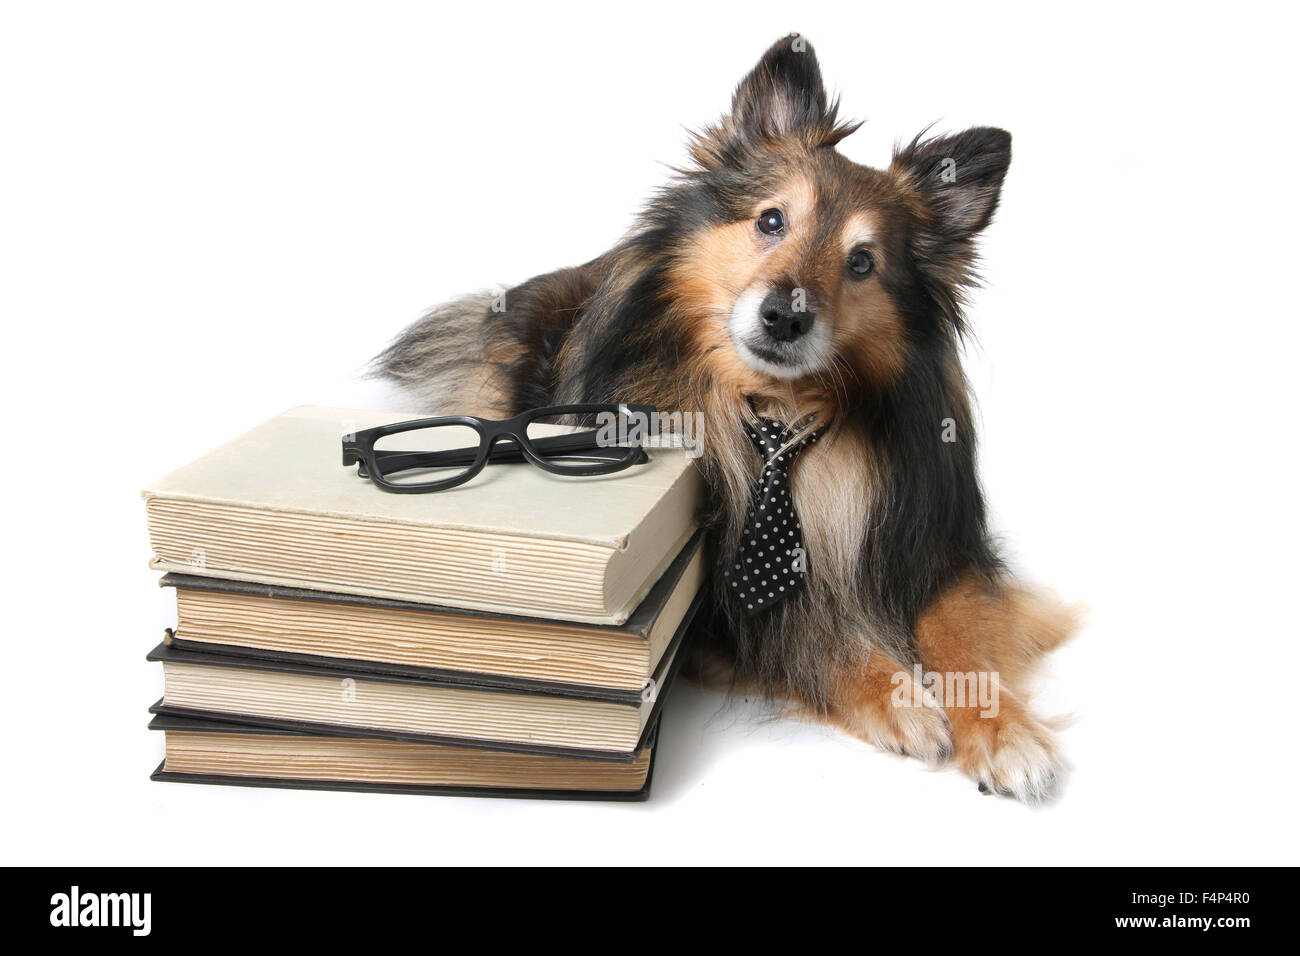 Sheltie oder Shetland Sheepdog mit einer Krawatte, die Verlegung durch einen Stapel Bücher, tierische Bildungskonzept Stockfoto